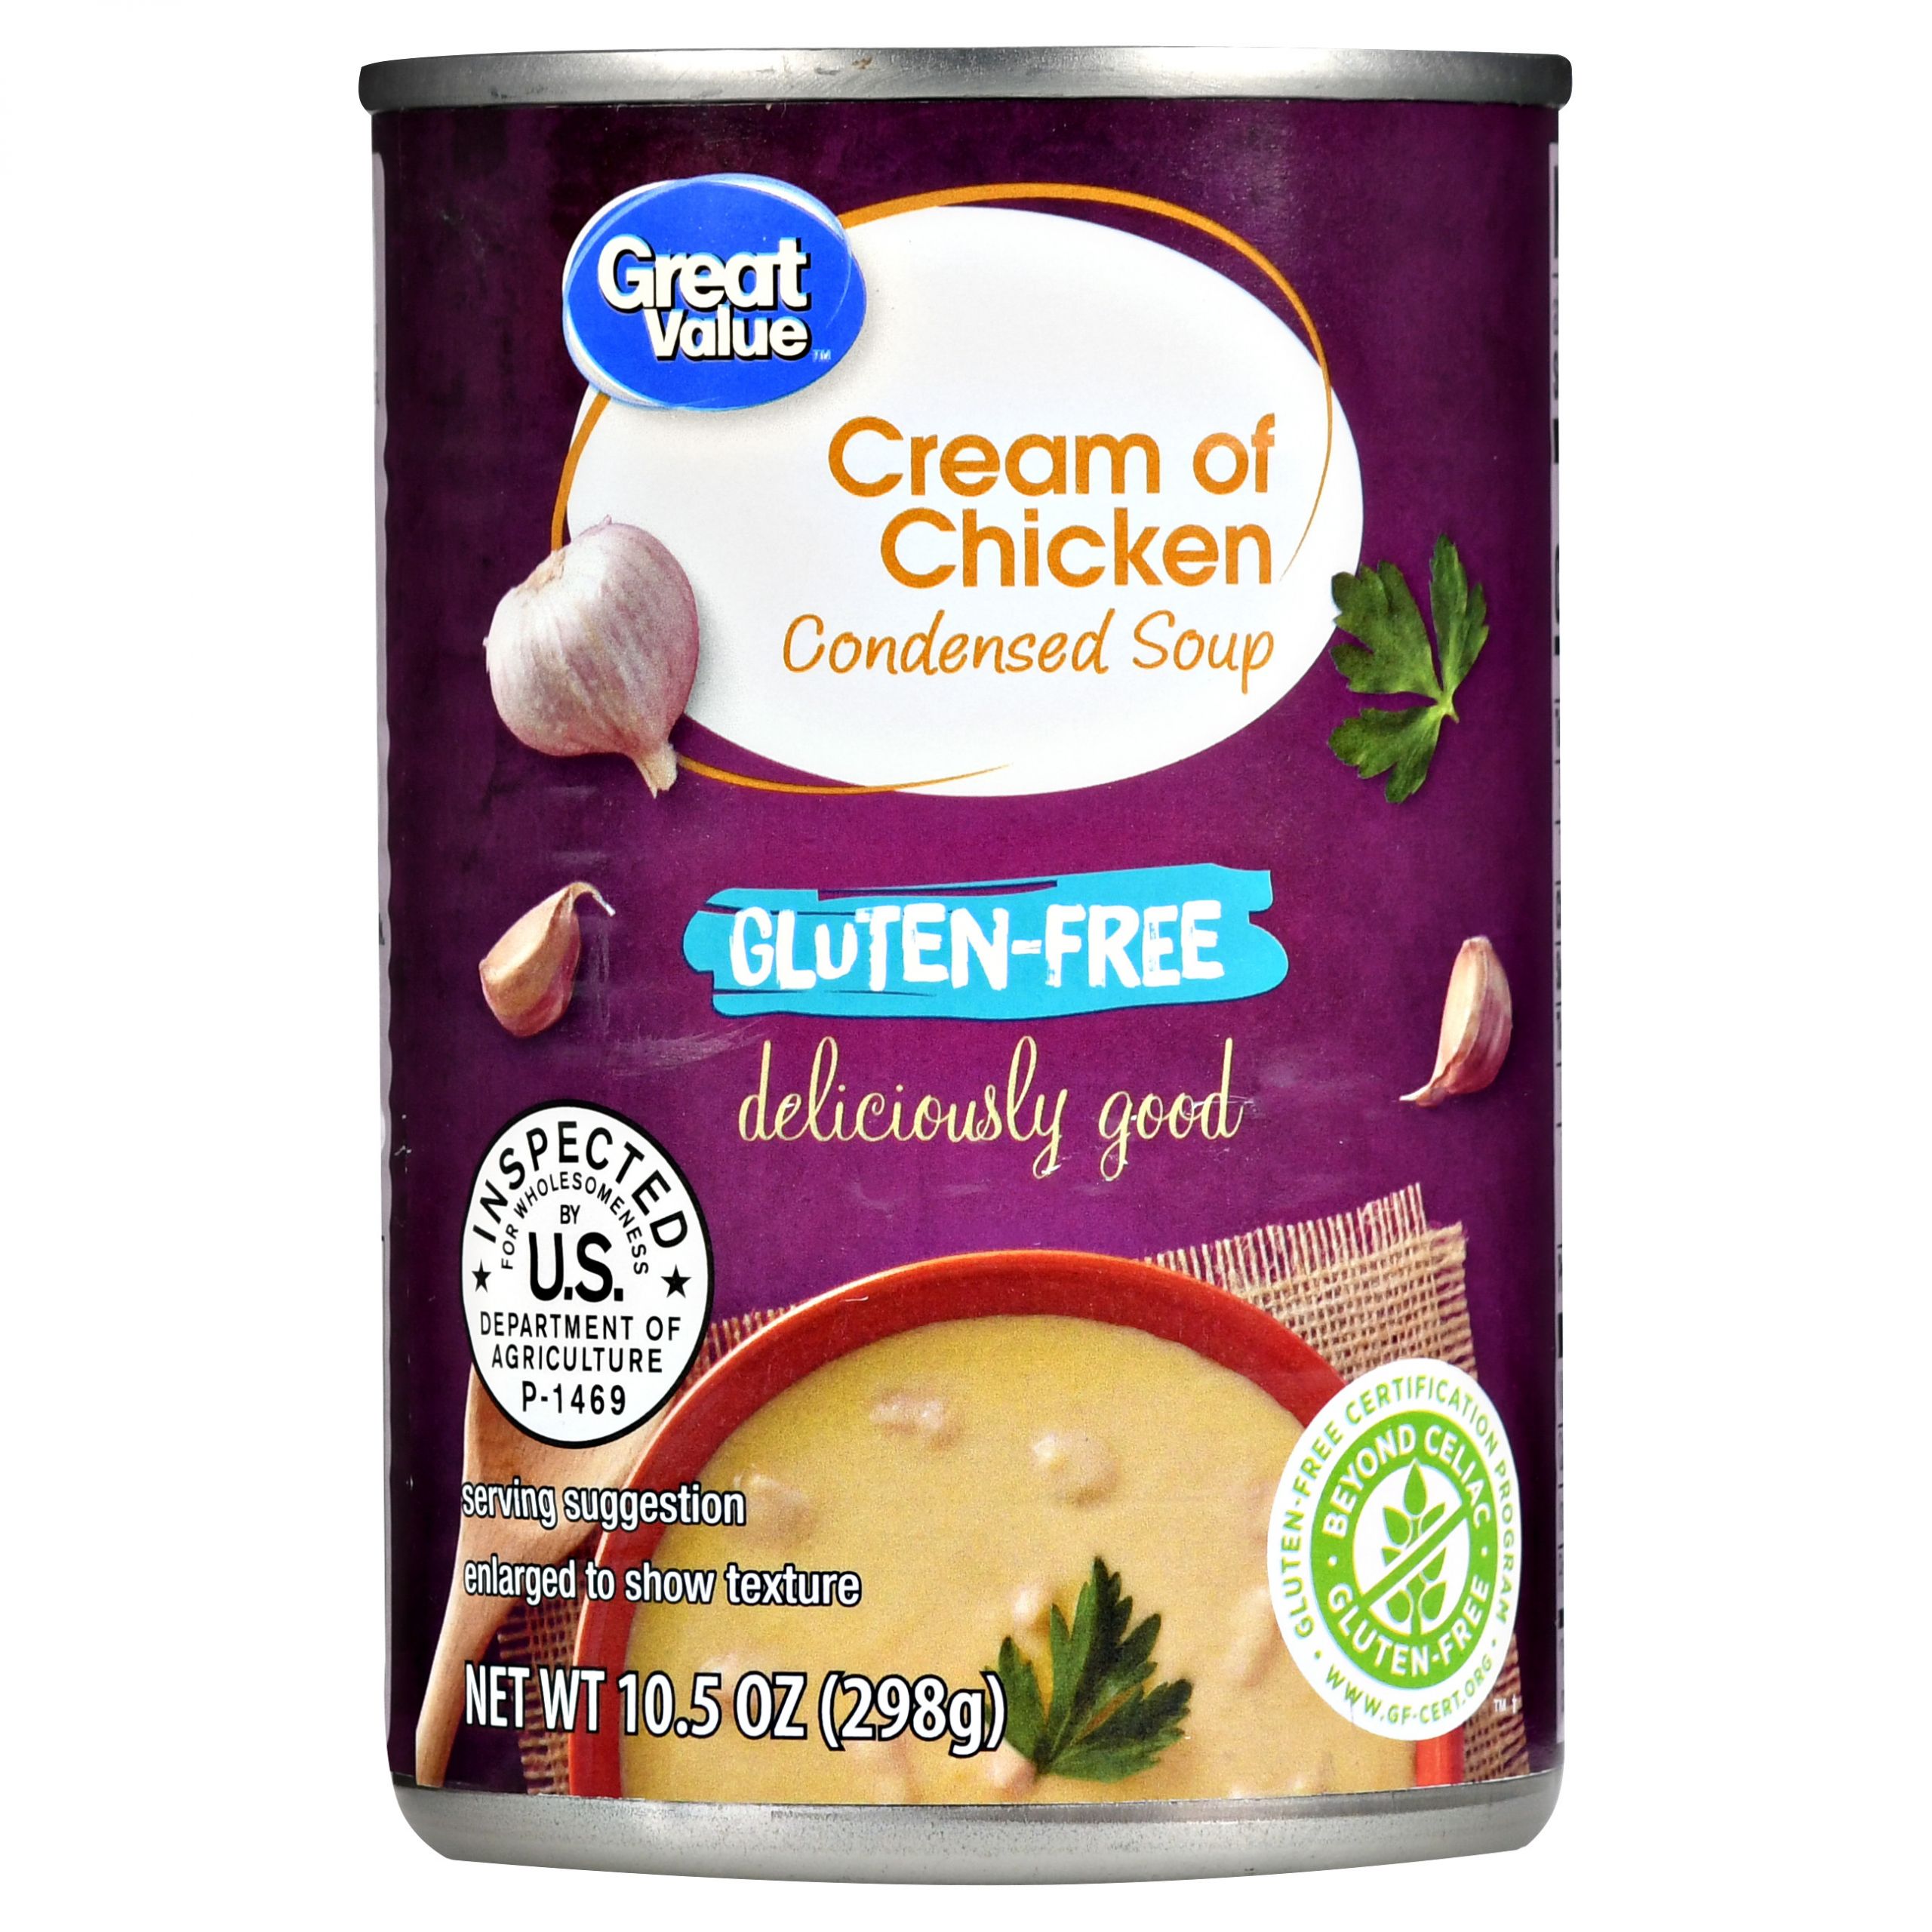 Gluten Free Cream Of Chicken soup Elegant Great Value Gluten Free Cream Of Chicken Condensed soup